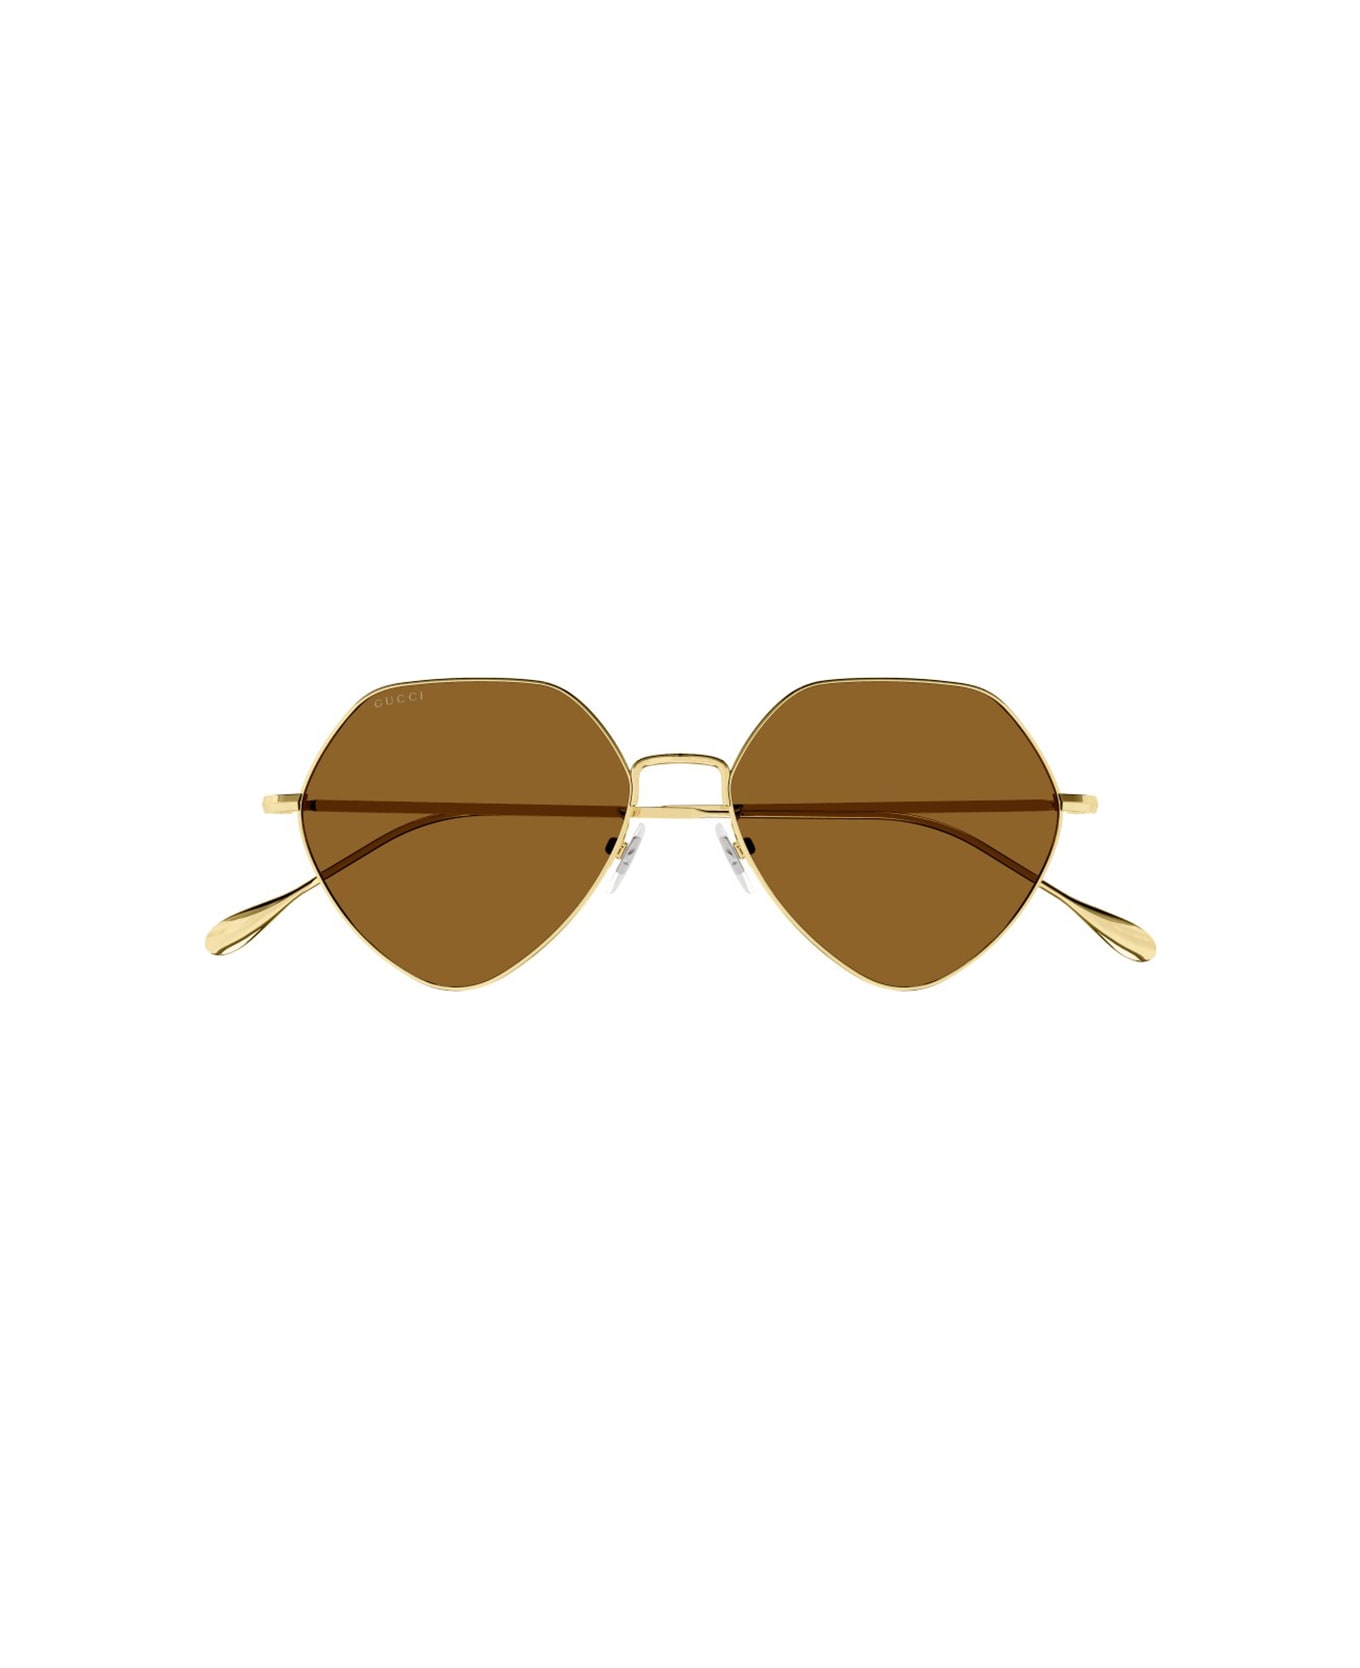 Gucci Eyewear 1e554id0a - Ray Ban Andy Sunglasses